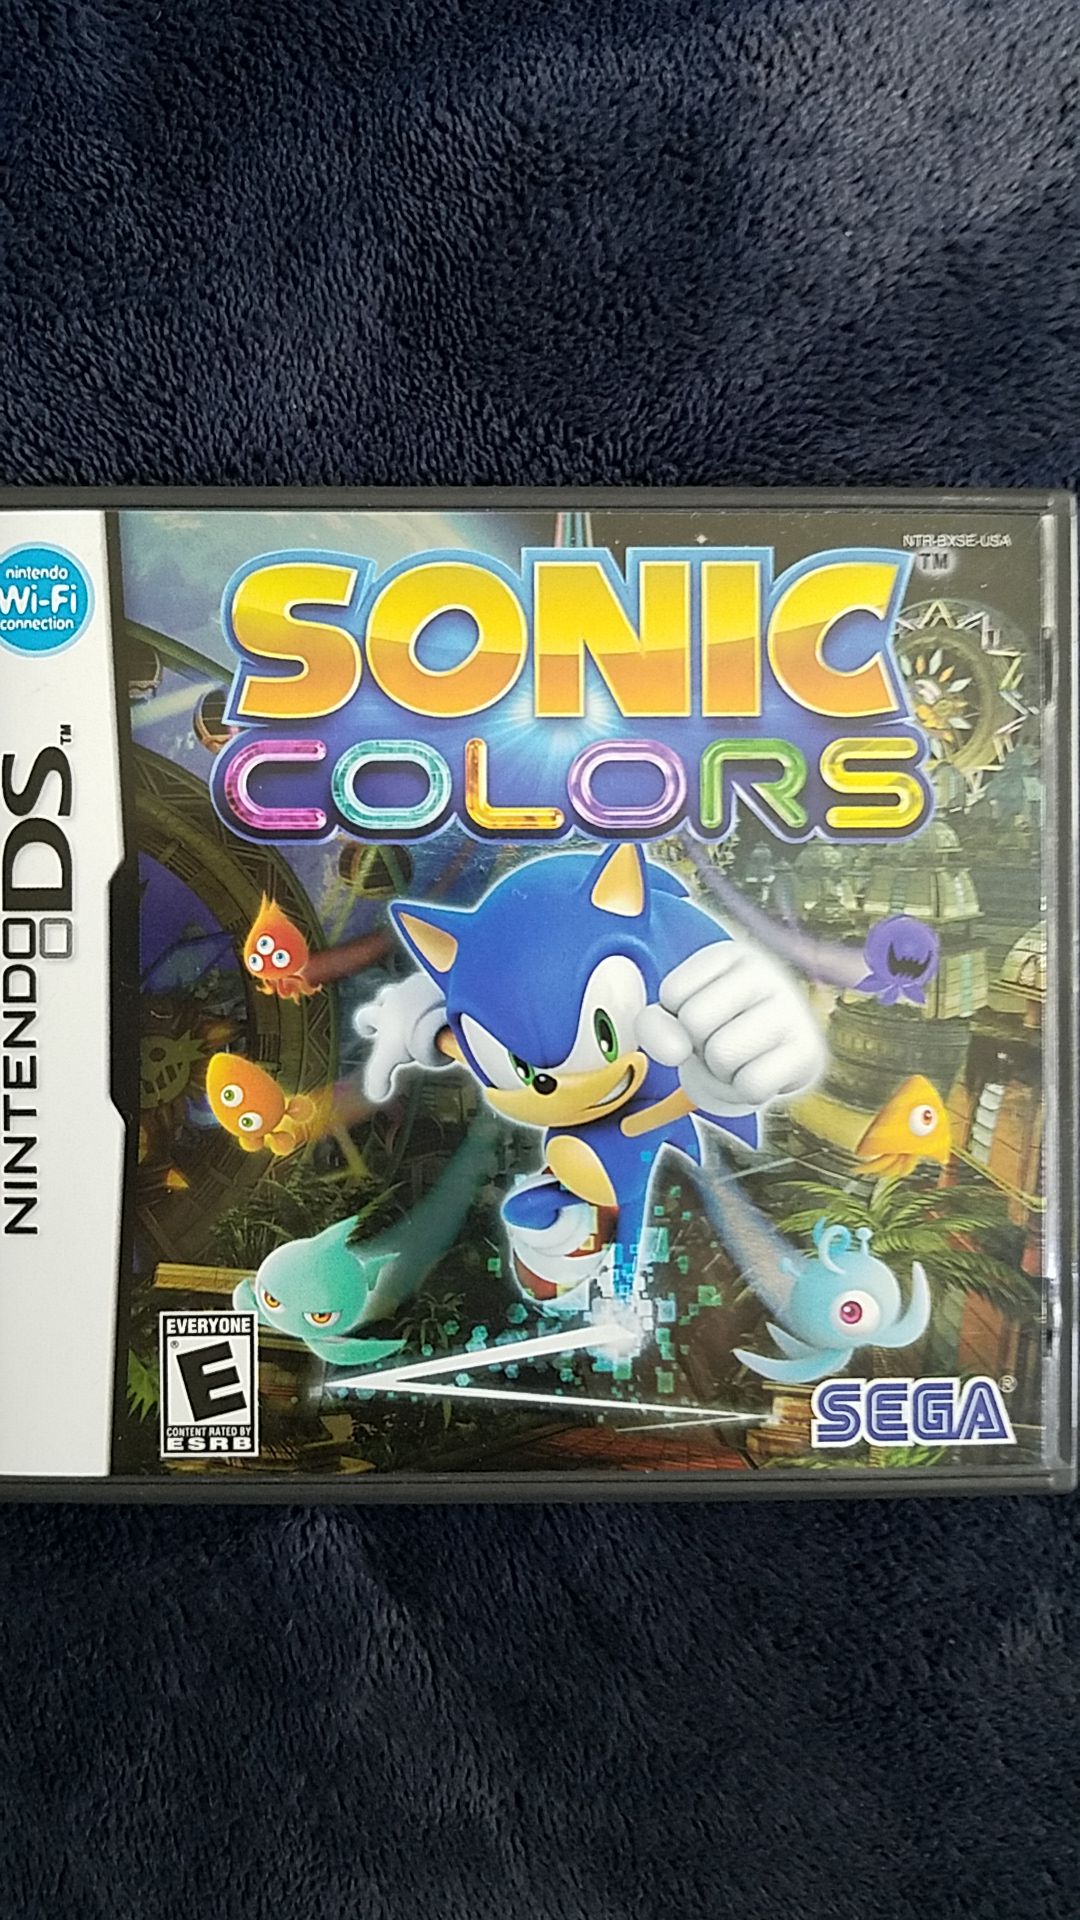 Sonic Colors Nintendo DS